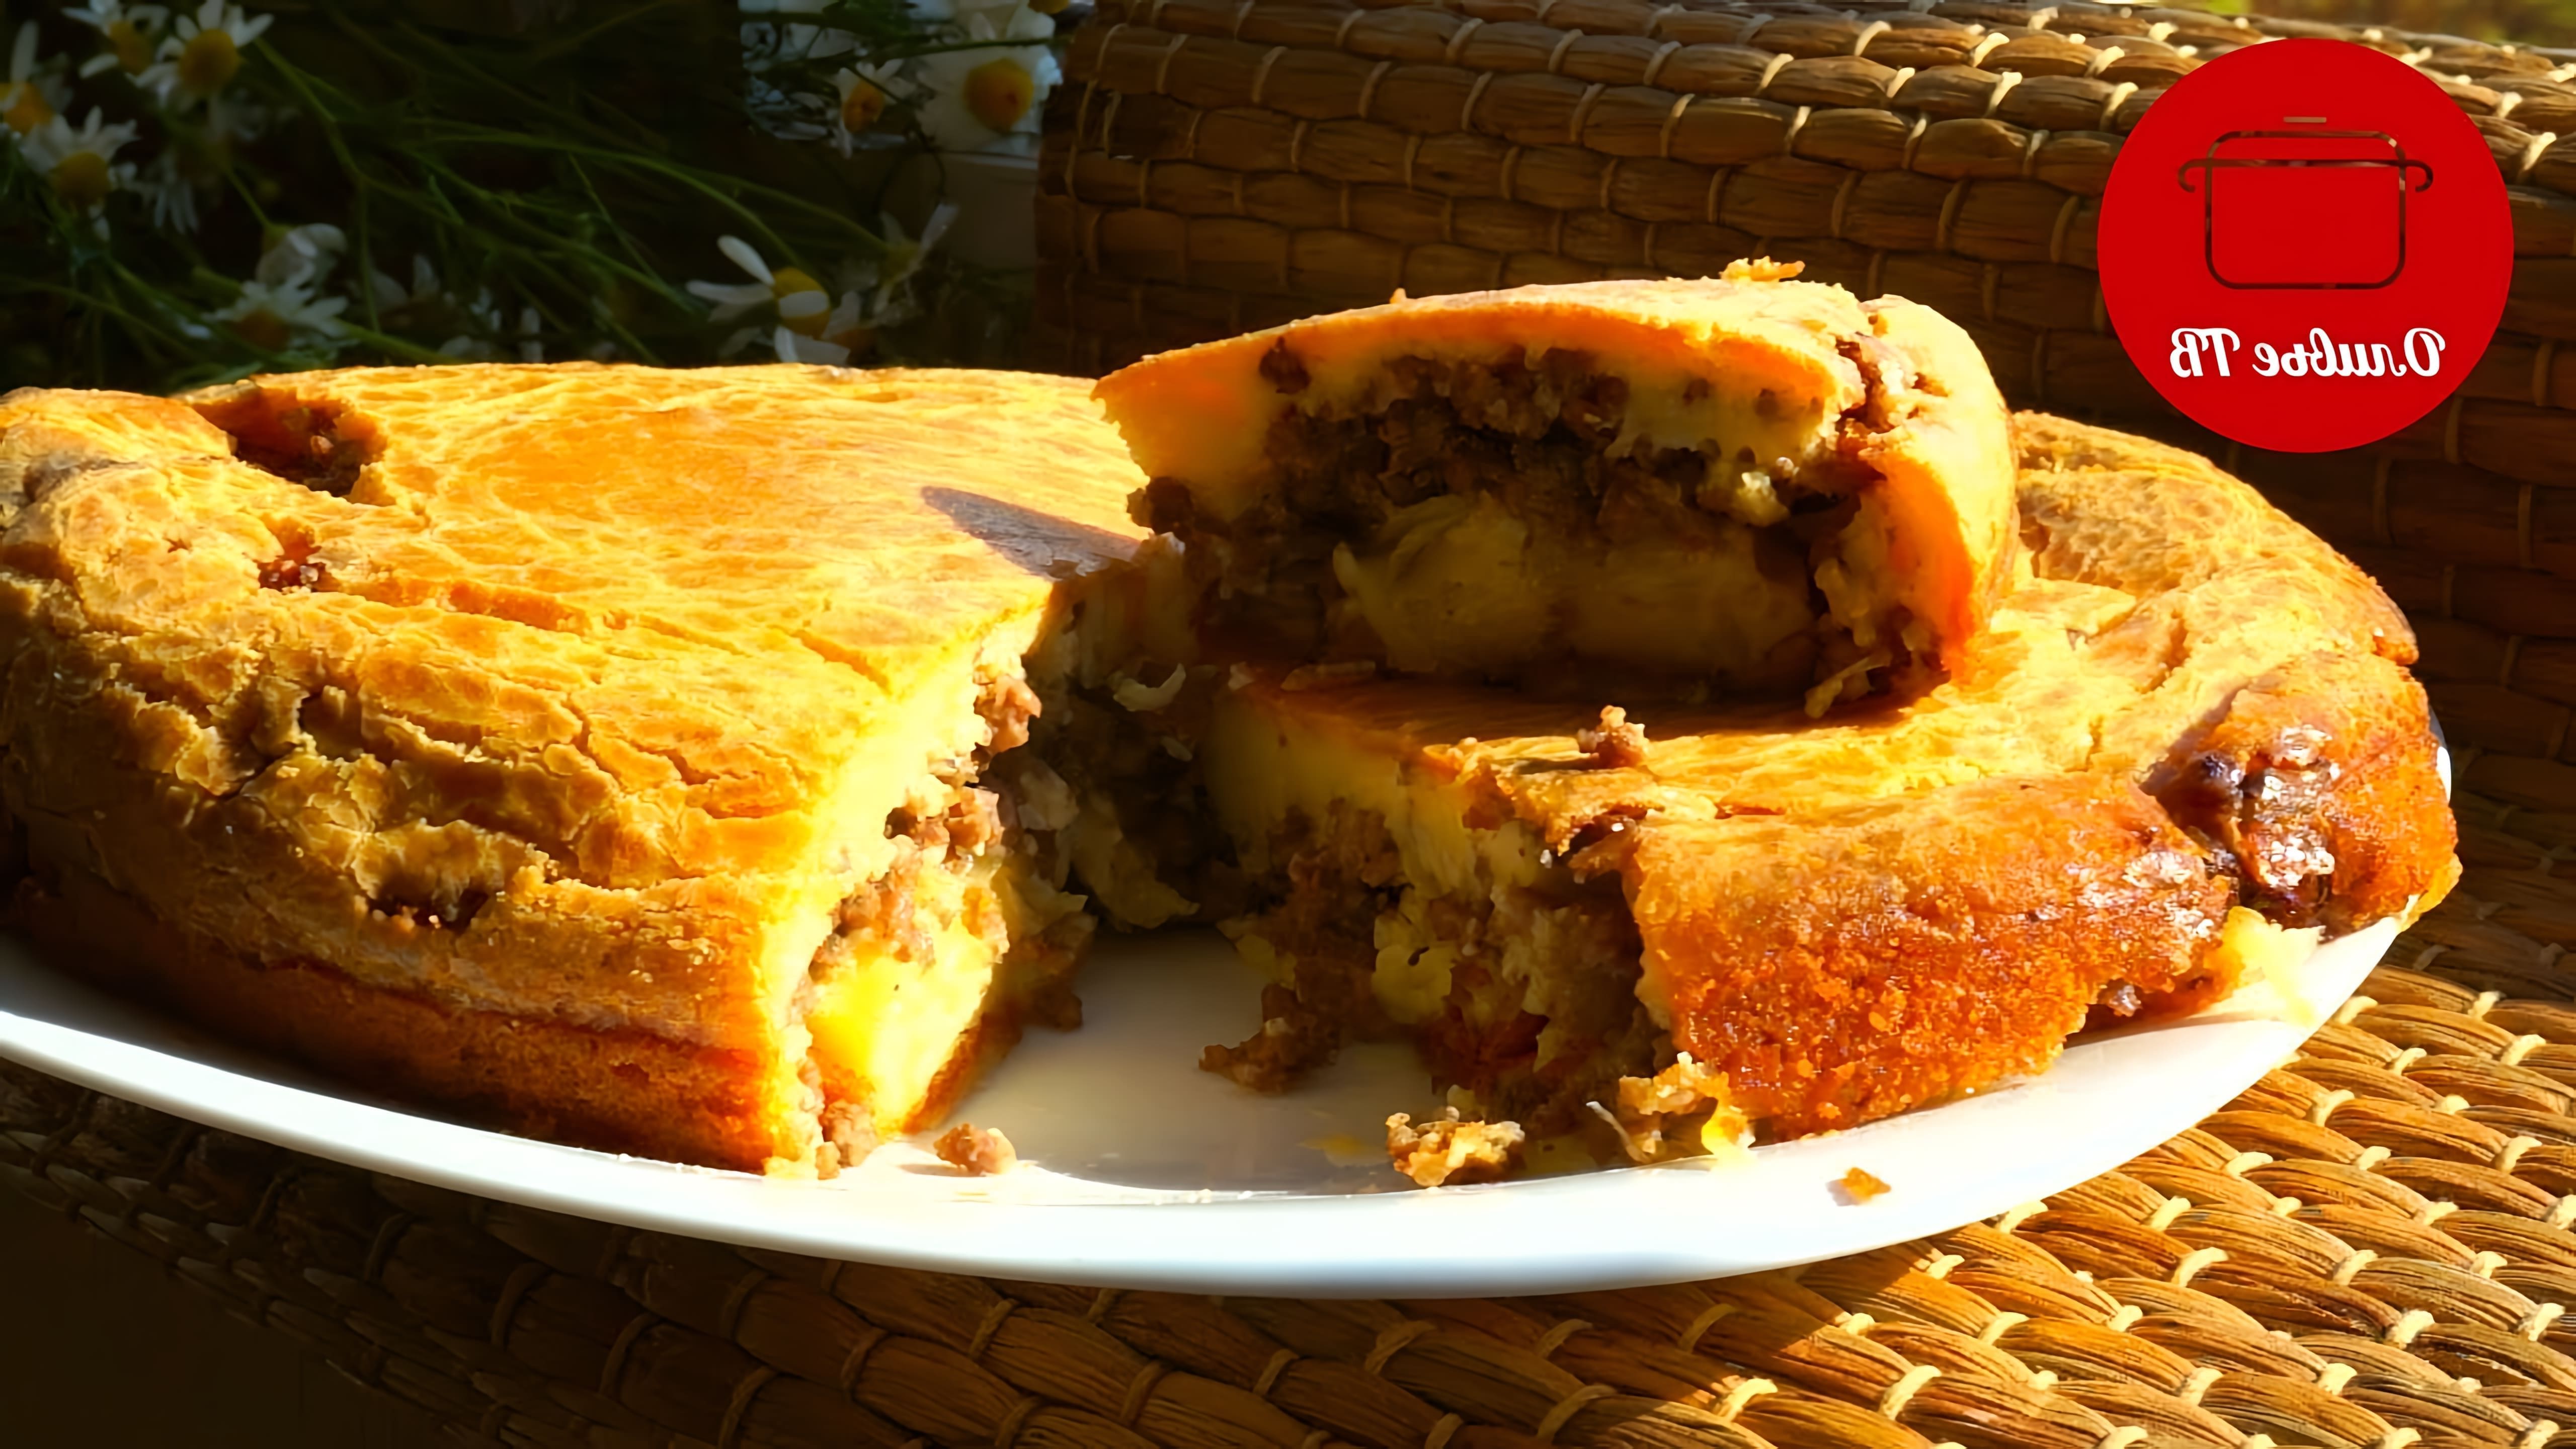 В этом видео демонстрируется рецепт приготовления заливного пирога с мясом и картофелем